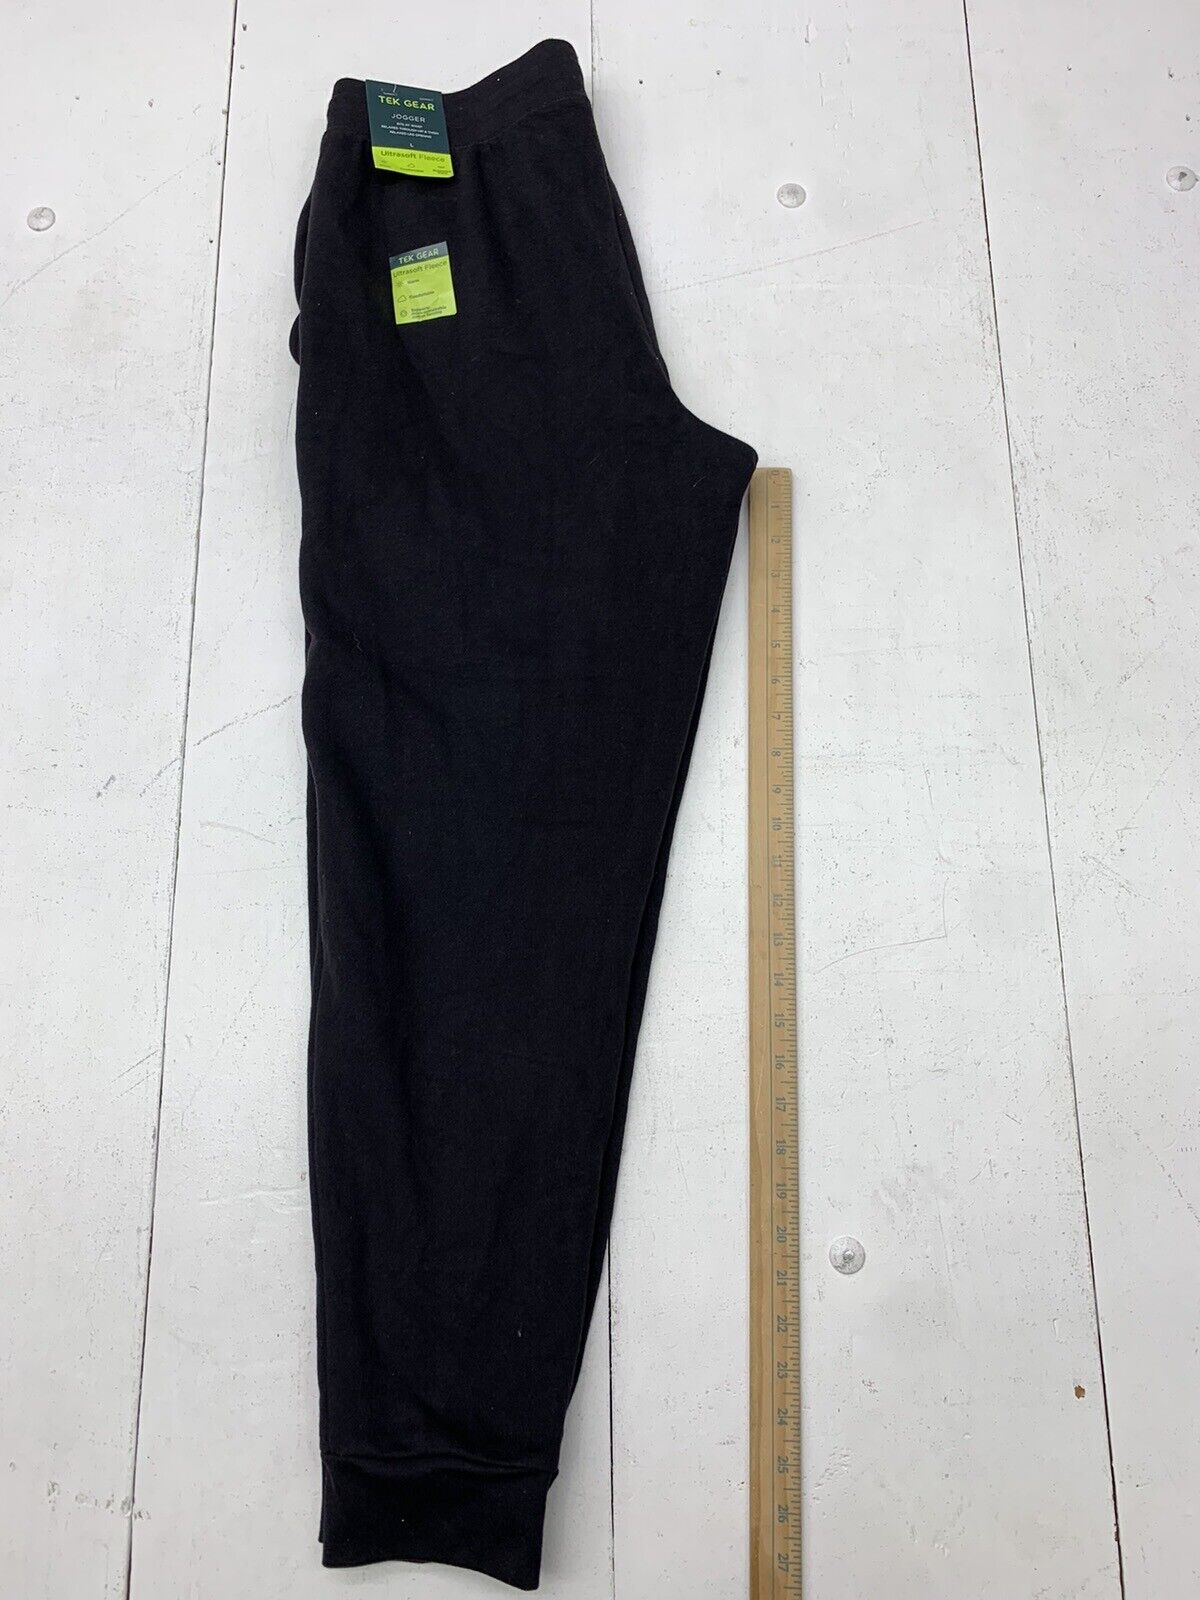 Tek Gear Ultra-soft Fleece Pants - Black - Size L.